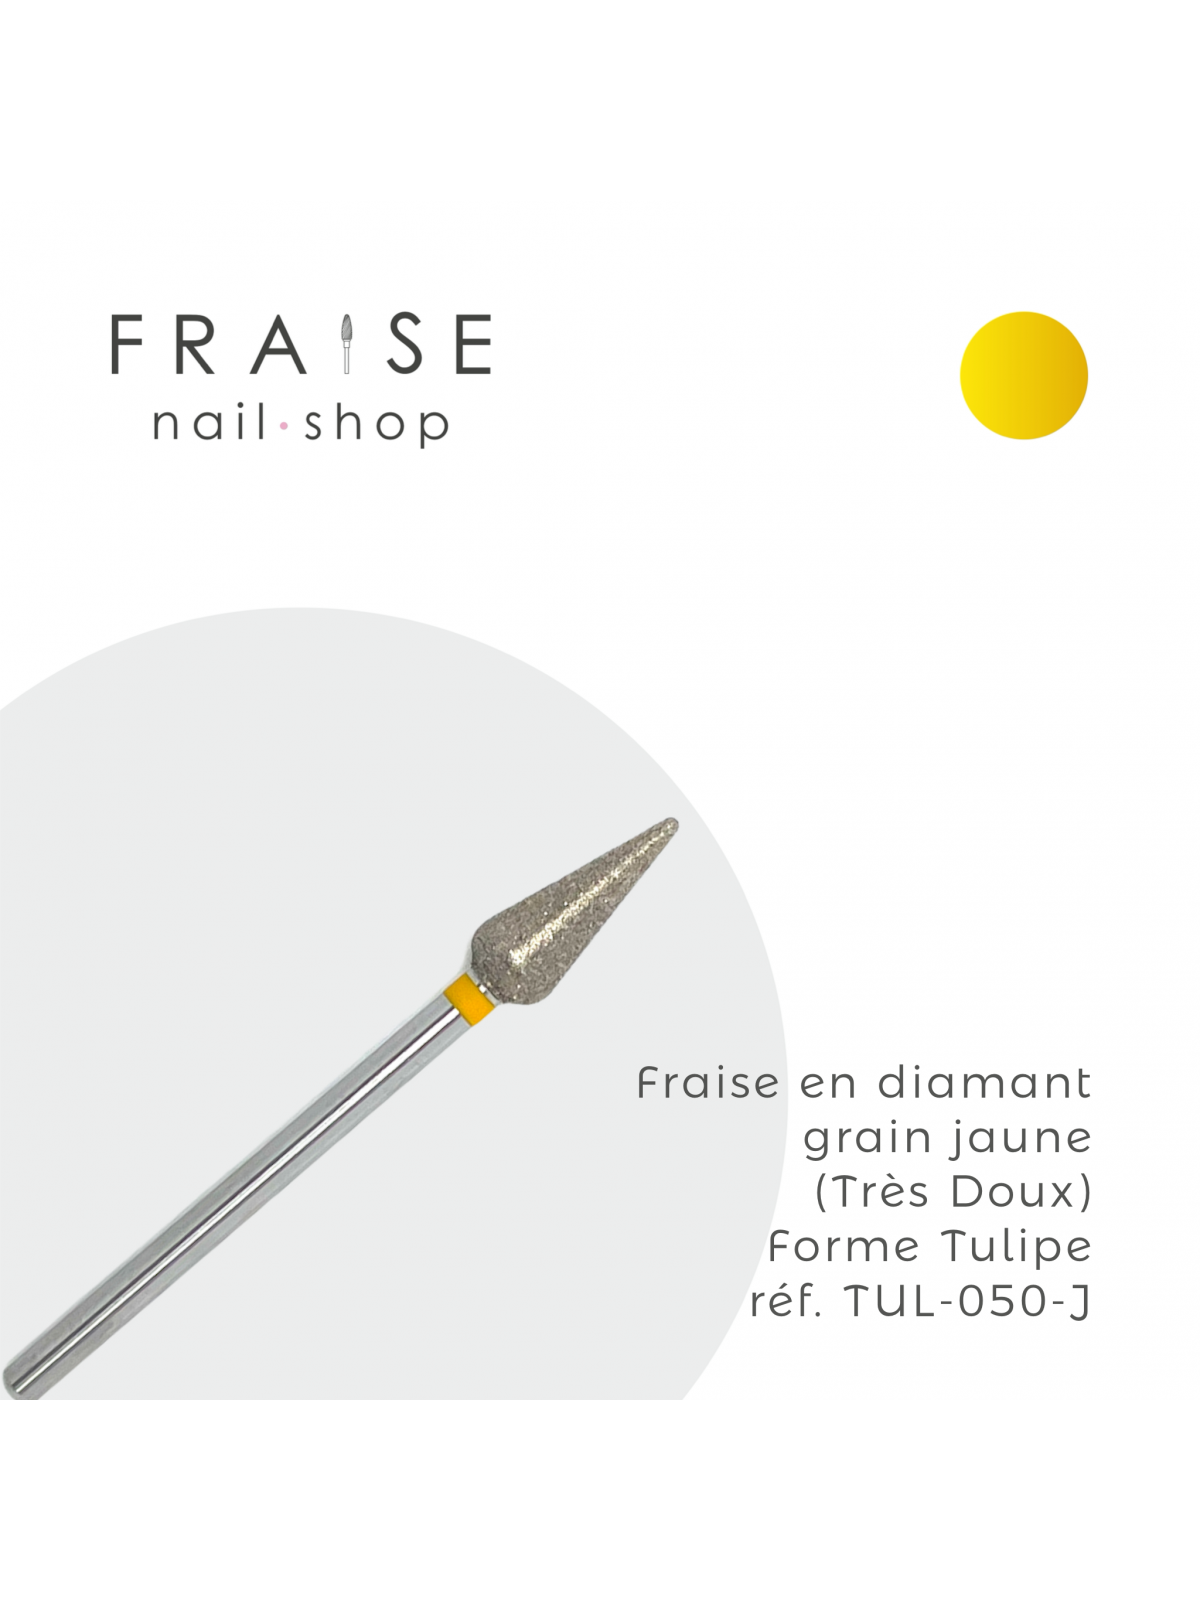 Fraise en Diamant Grain Jaune forme Tulipe 0,50 cm- Fraise Nail Shop